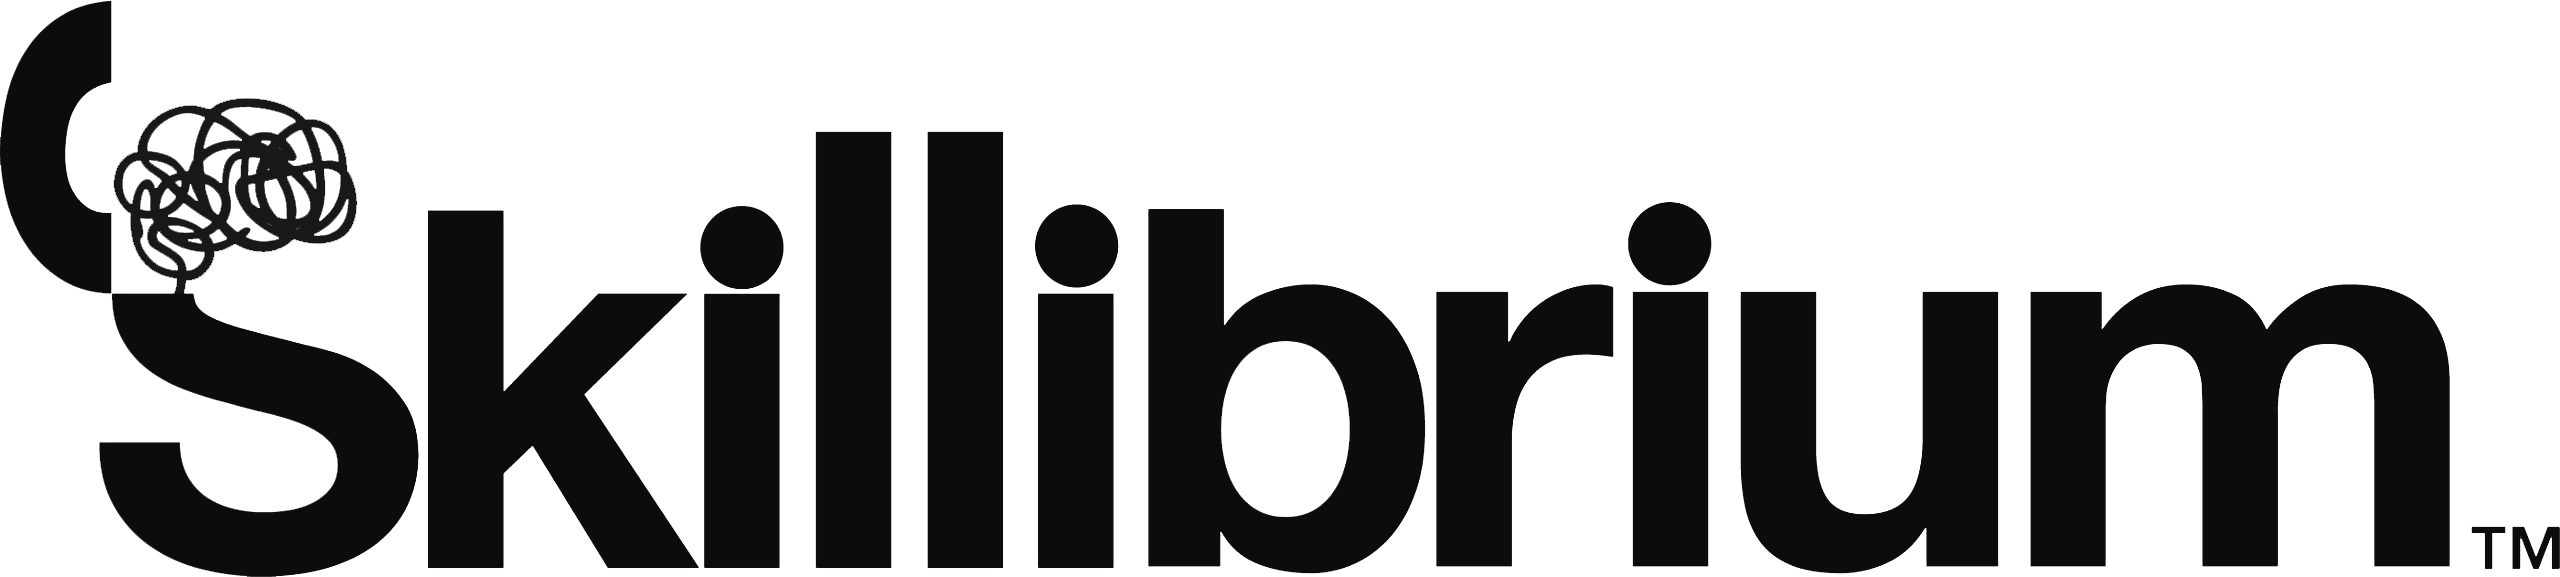 Skillibrium logo wlh